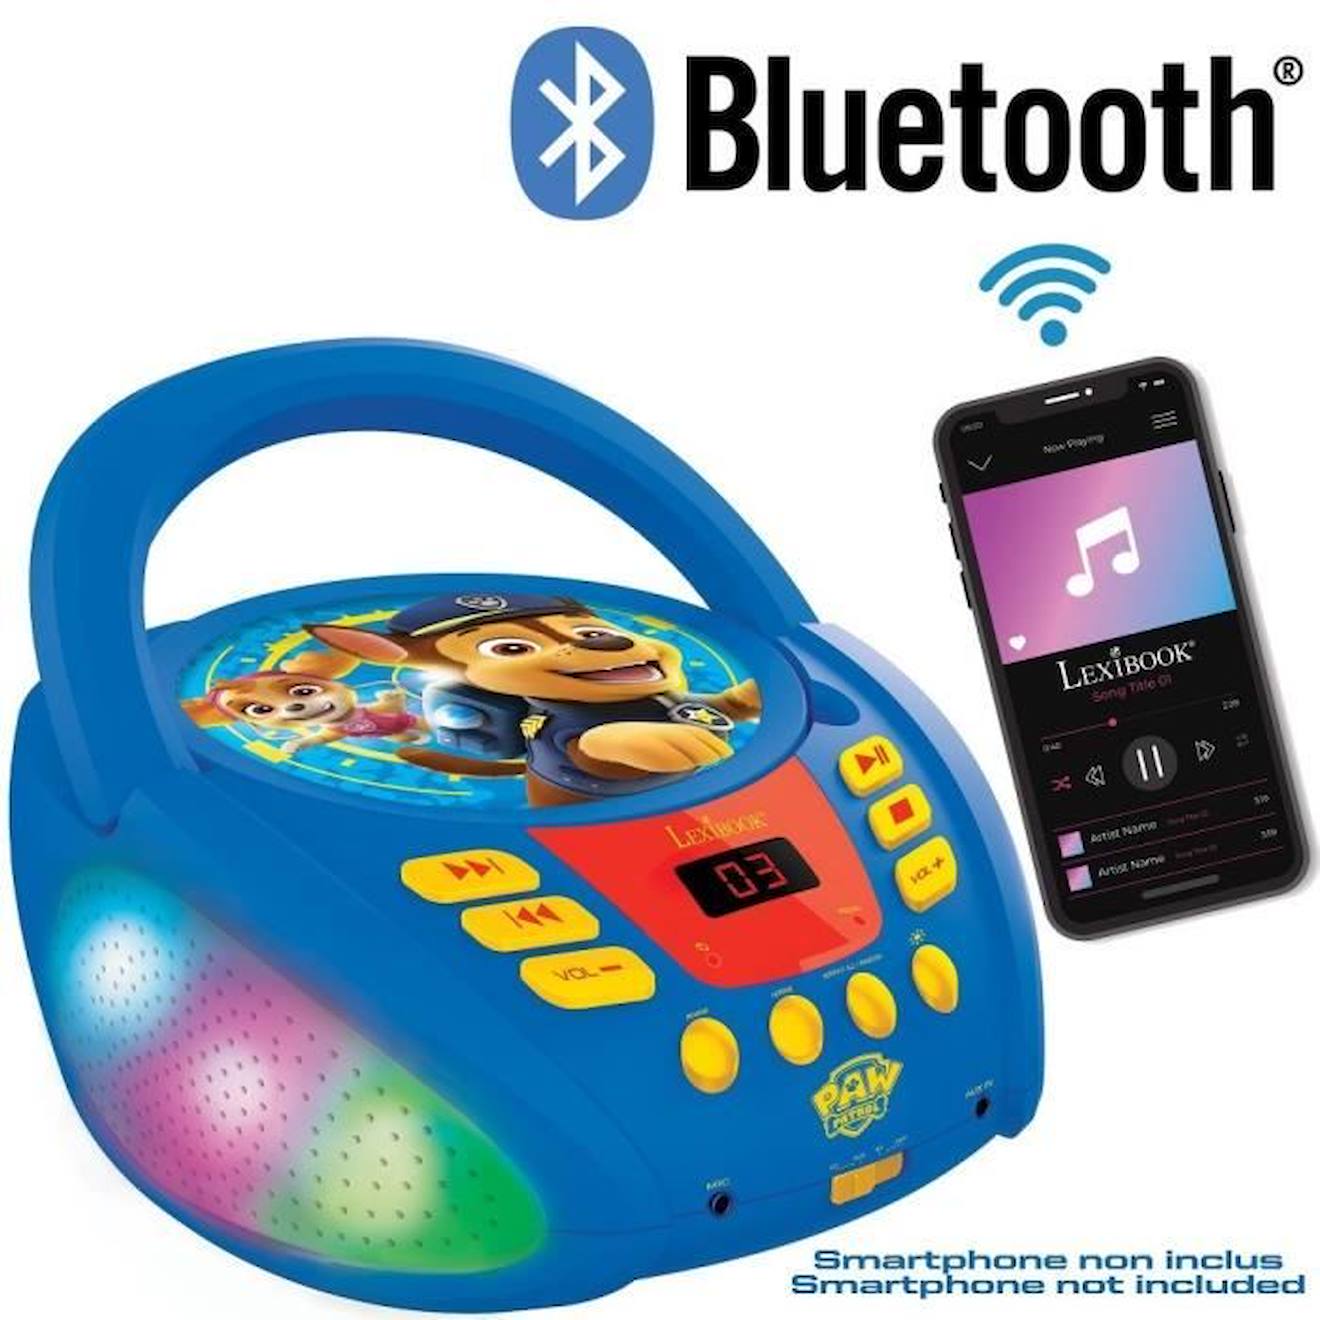 LEXIBOOK Lecteur CD enfant Bluetooth Pat Patrouille effets